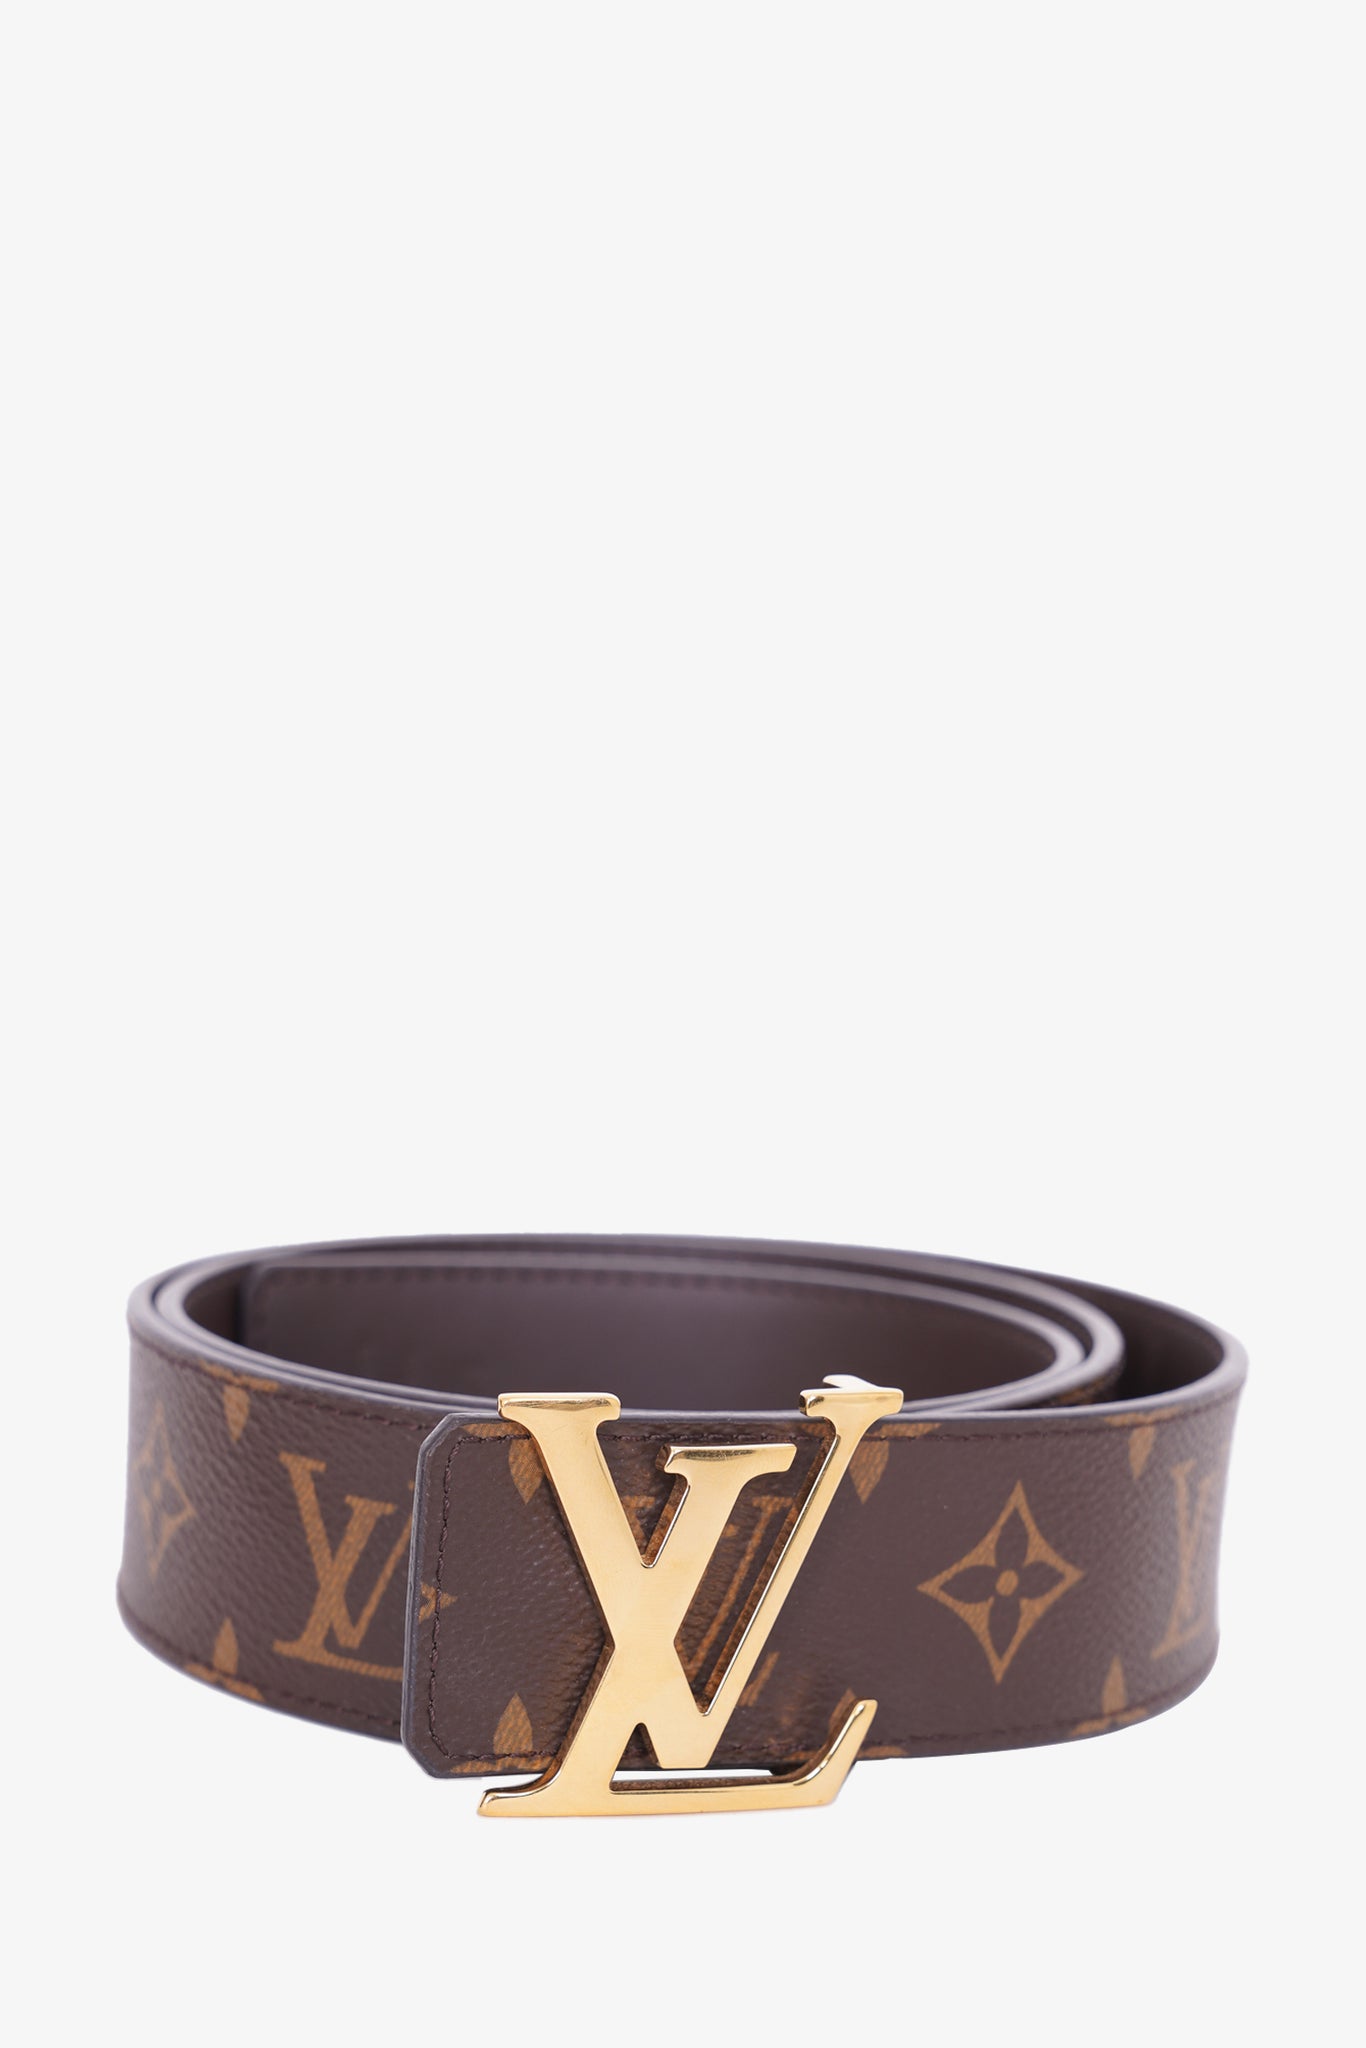 Louis Vuitton 2014 Leather Belt Xs